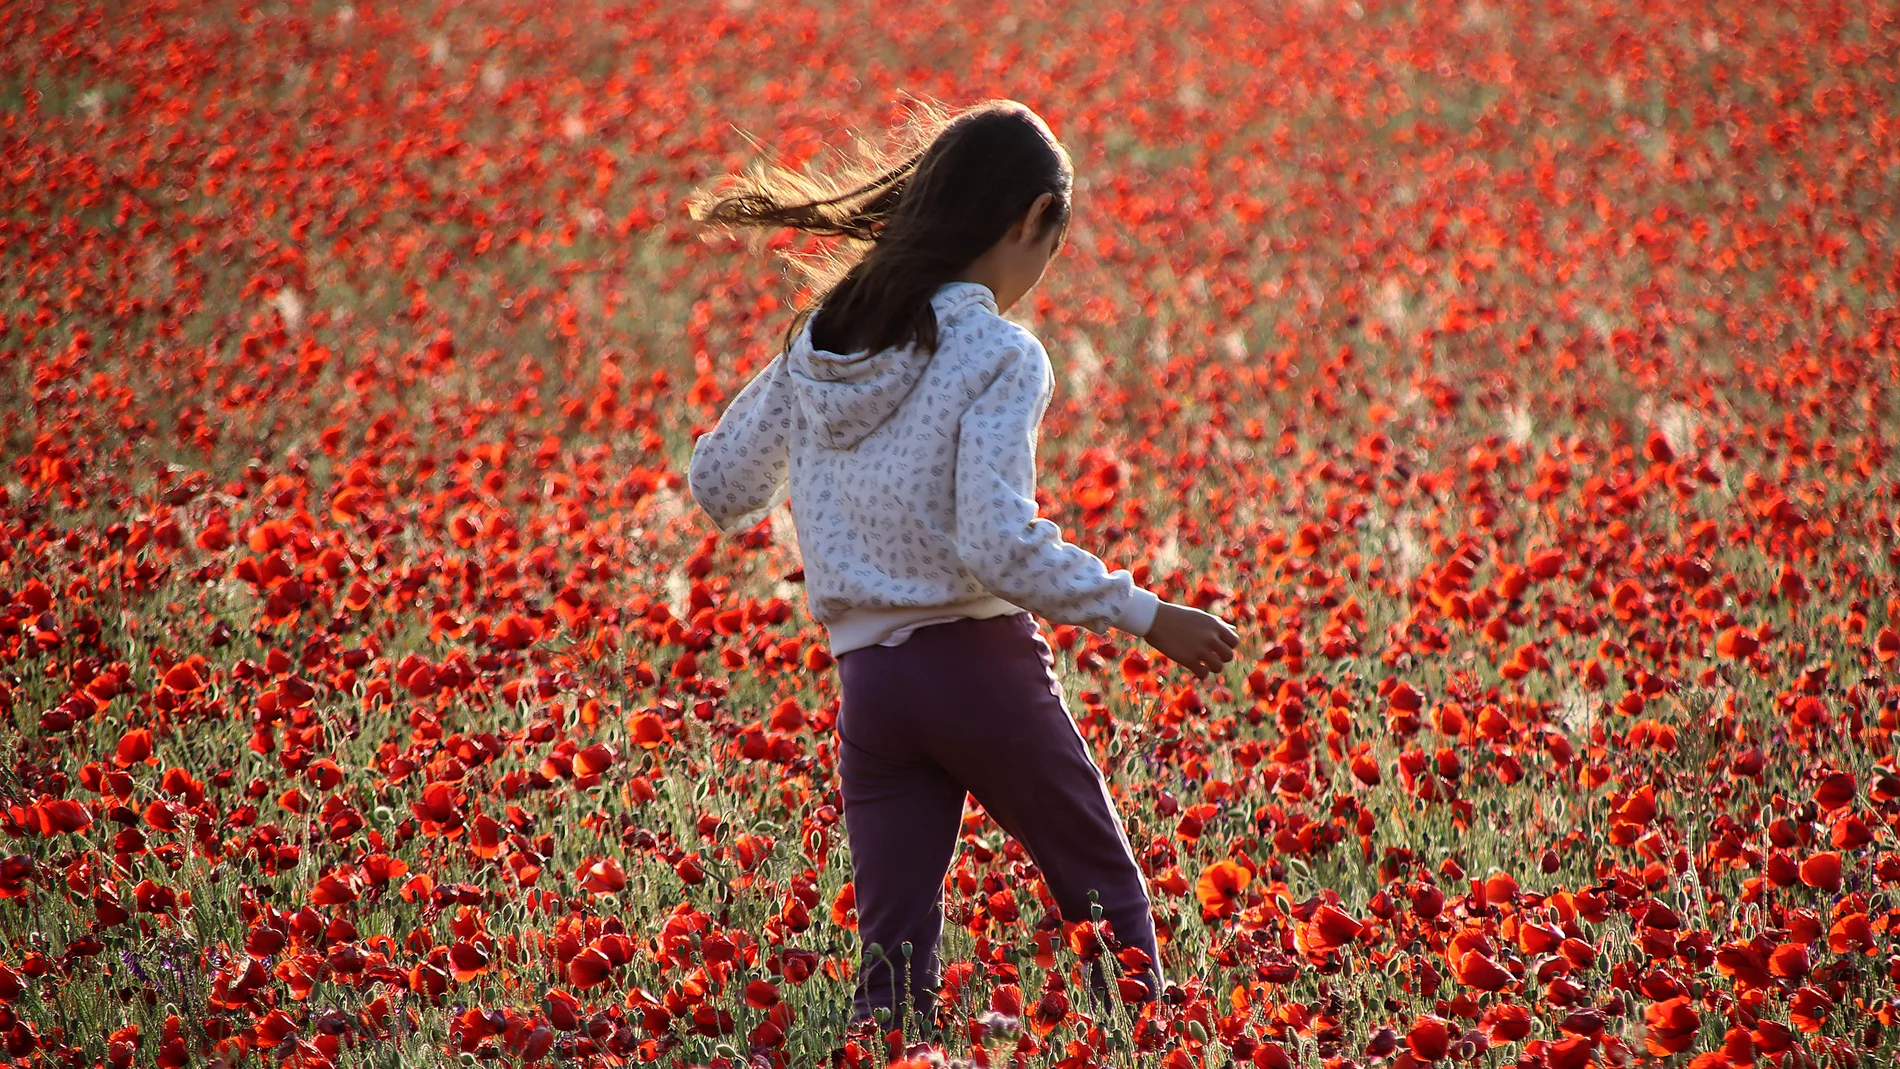 El campo de Castilla y León se tiñe de rojo. Una niña en un campo de amapolas en la provincia de León